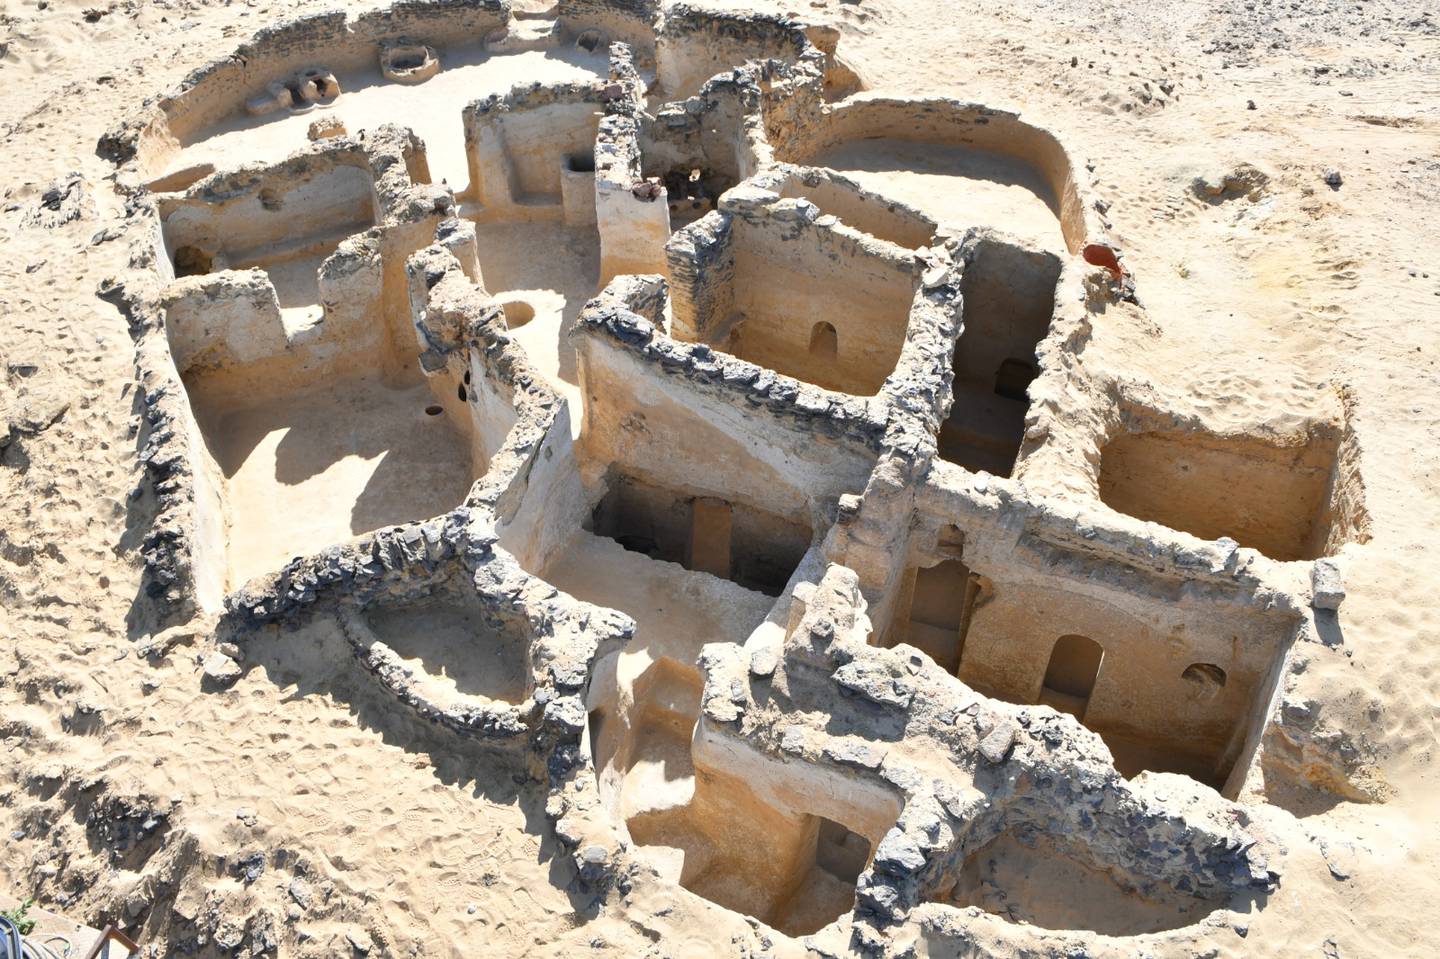 MF-professor Victor Ghica har ledet utgravningsarbeidet i Bahariya-oasen i den vestlige ørkenen i Egypt, der det som trolig er verdens eldste kloster, nå er gravd fram. Ghica sier funnene endrer vår forståelse av den tidlige kristendom.